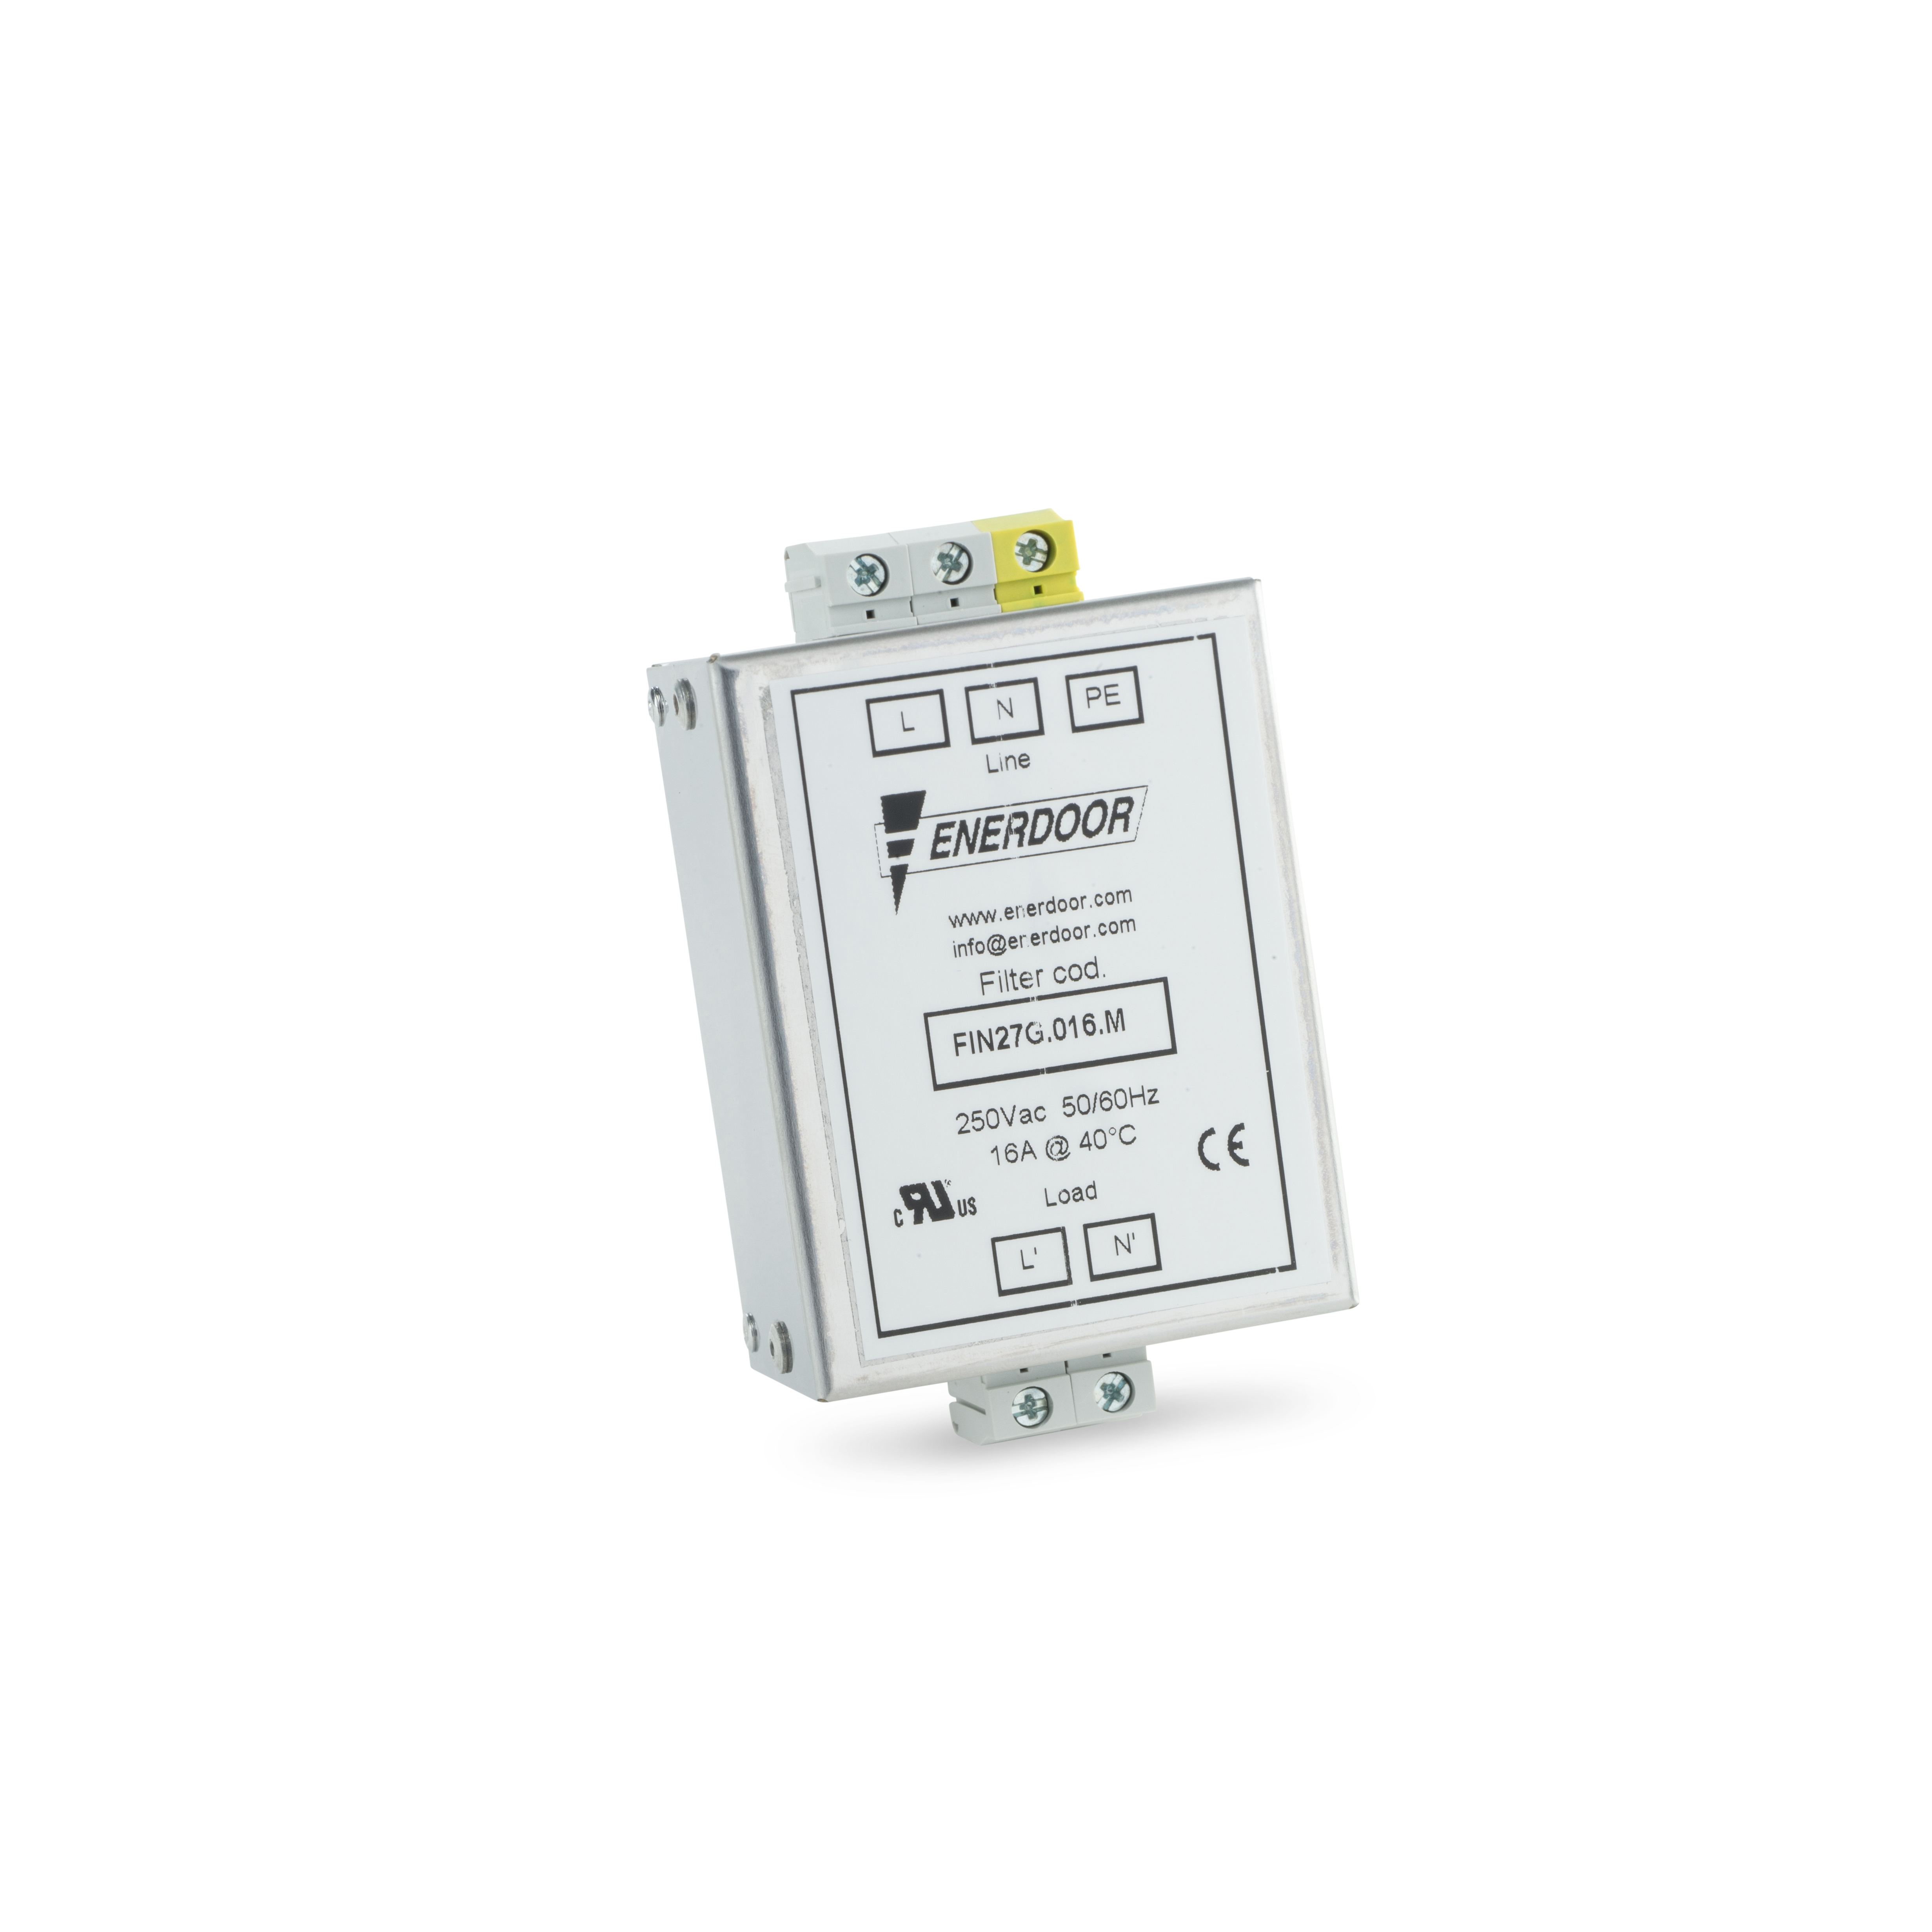 EMC Filter 1PH - Potted (VFD SMV)